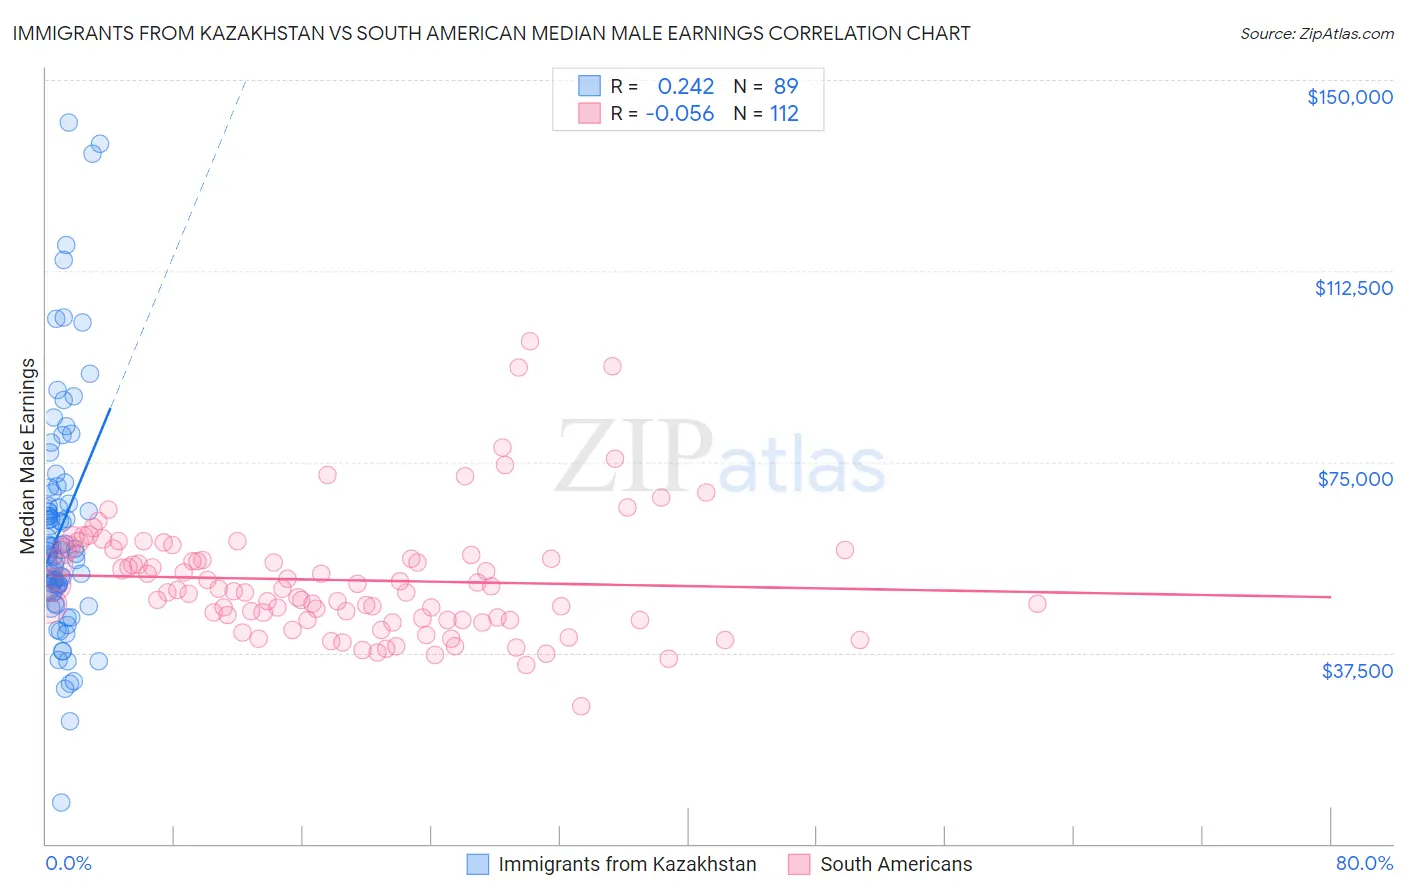 Immigrants from Kazakhstan vs South American Median Male Earnings